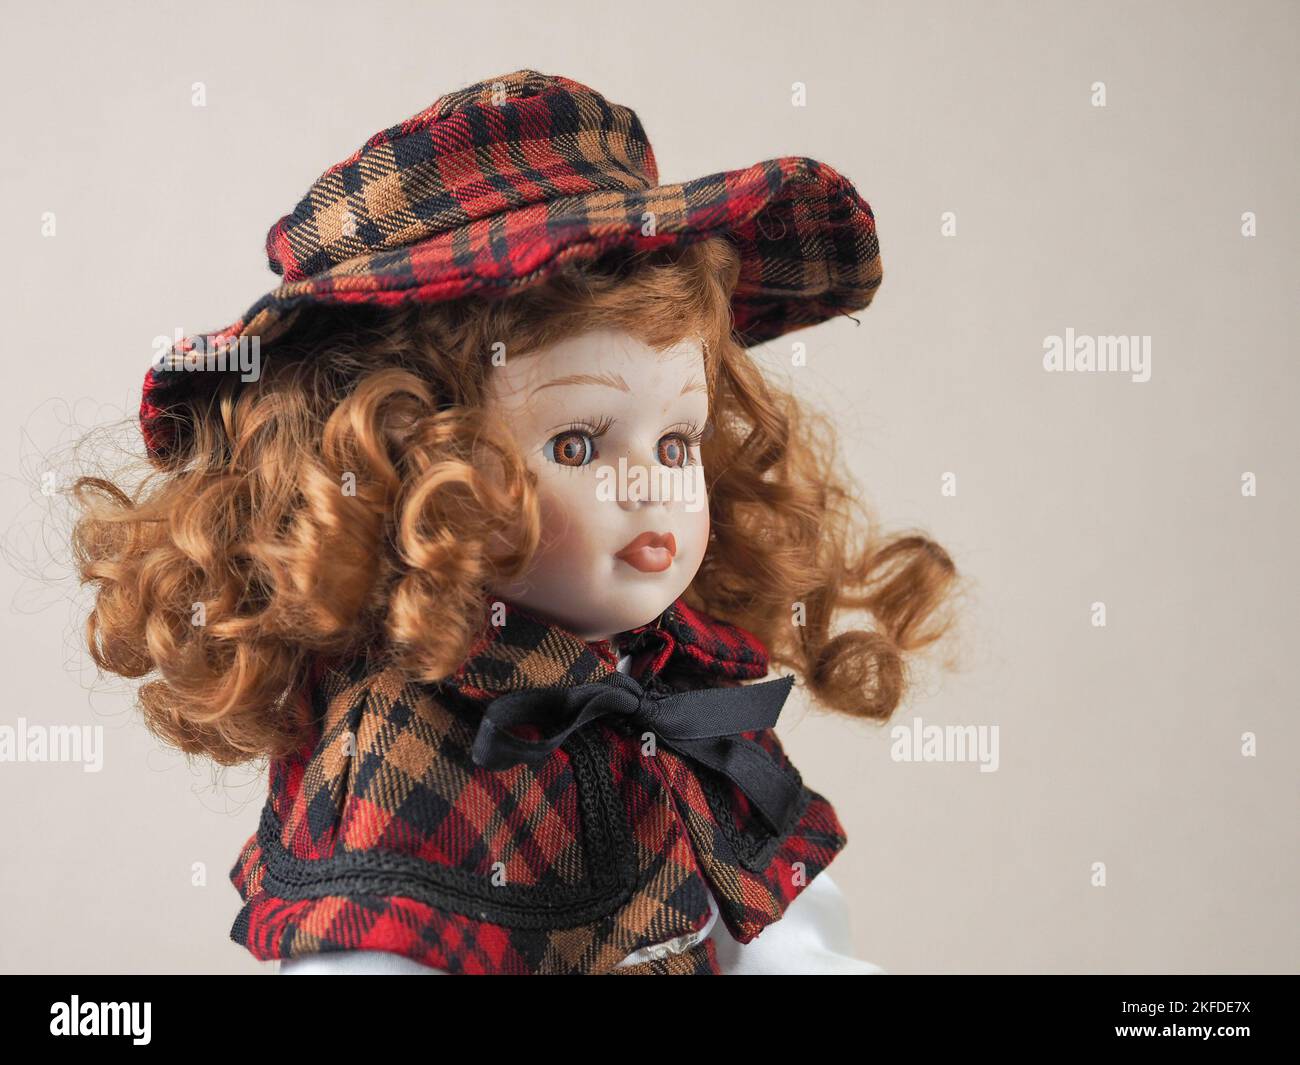 Chica muñeca de porcelana vintage con ojos marrones con pelo rizado rojo  que fluye en un vestido y un sombrero rojo y negro a cuadros. Muñecas de  porcelana aparecieron en el siglo